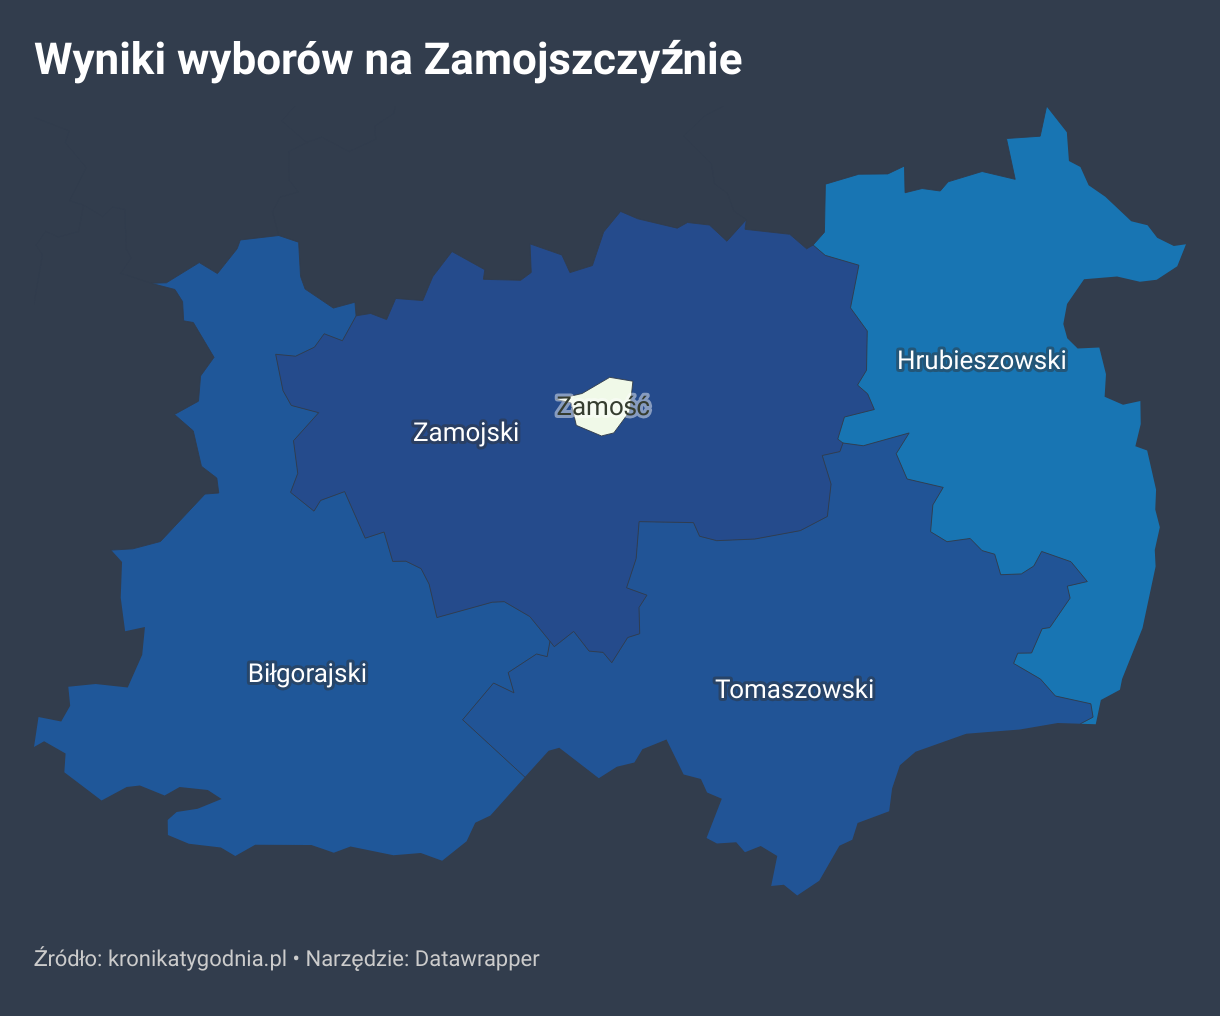 Wyniki wyborów parlamentarnych w powiatach biłgorajskim, zamojskim, tomaszowskim, hrubieszowskim oraz w mieście Zamość.